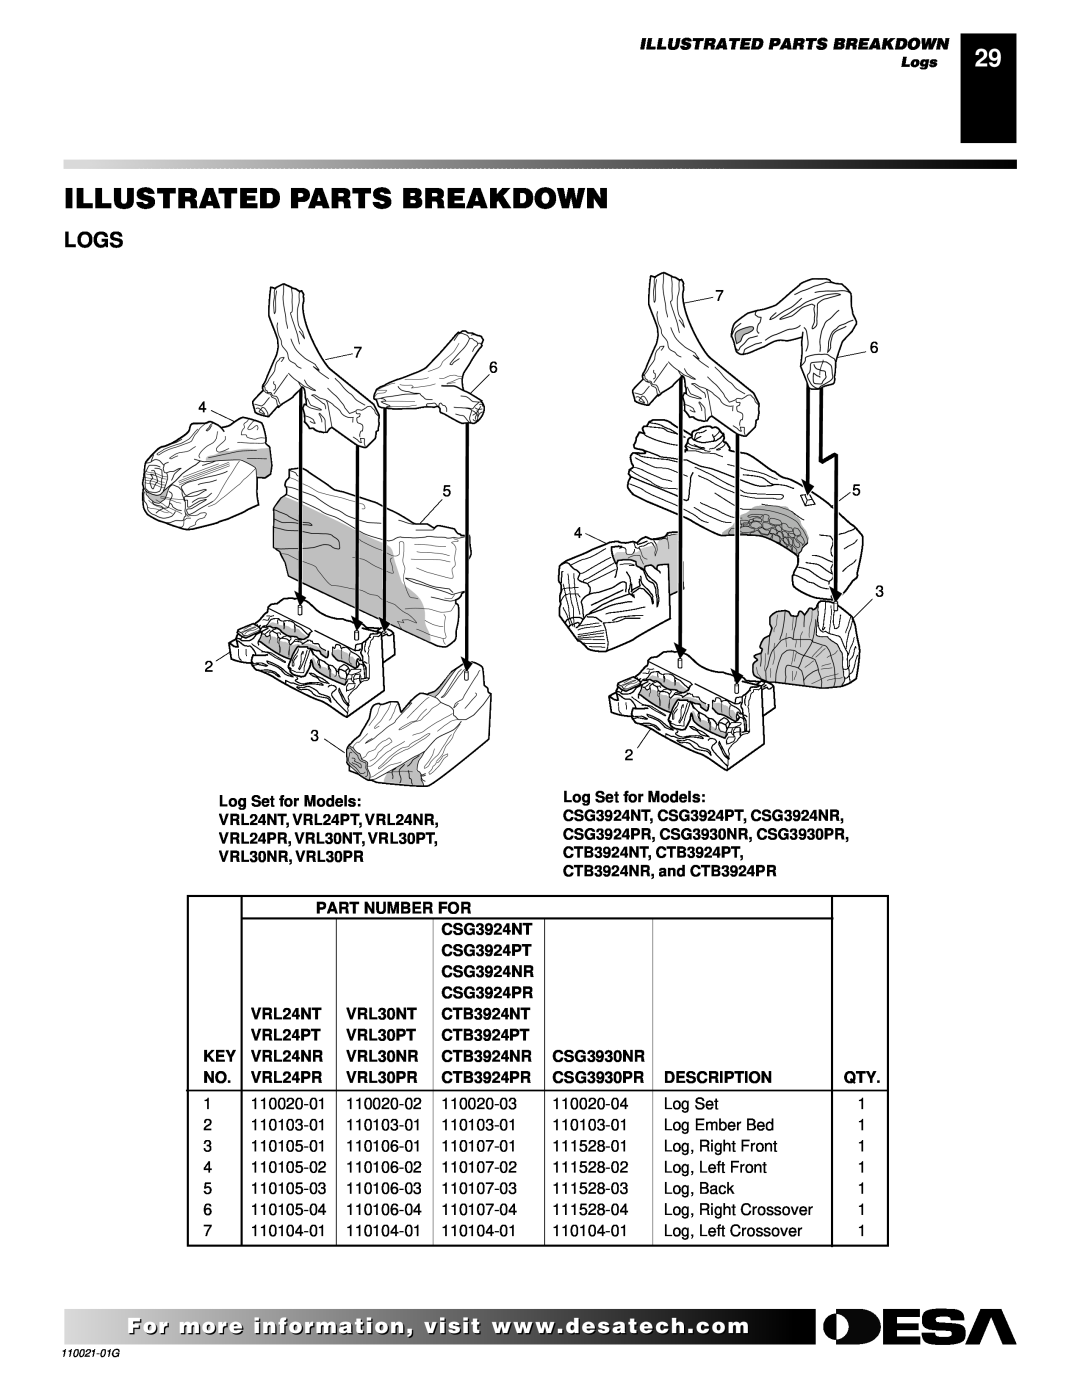 Desa CSG3930NR Illustrated Parts Breakdown, Logs, Log Set for Models, Part Number For, CSG3924NT, CSG3924PT, CSG3924NR 